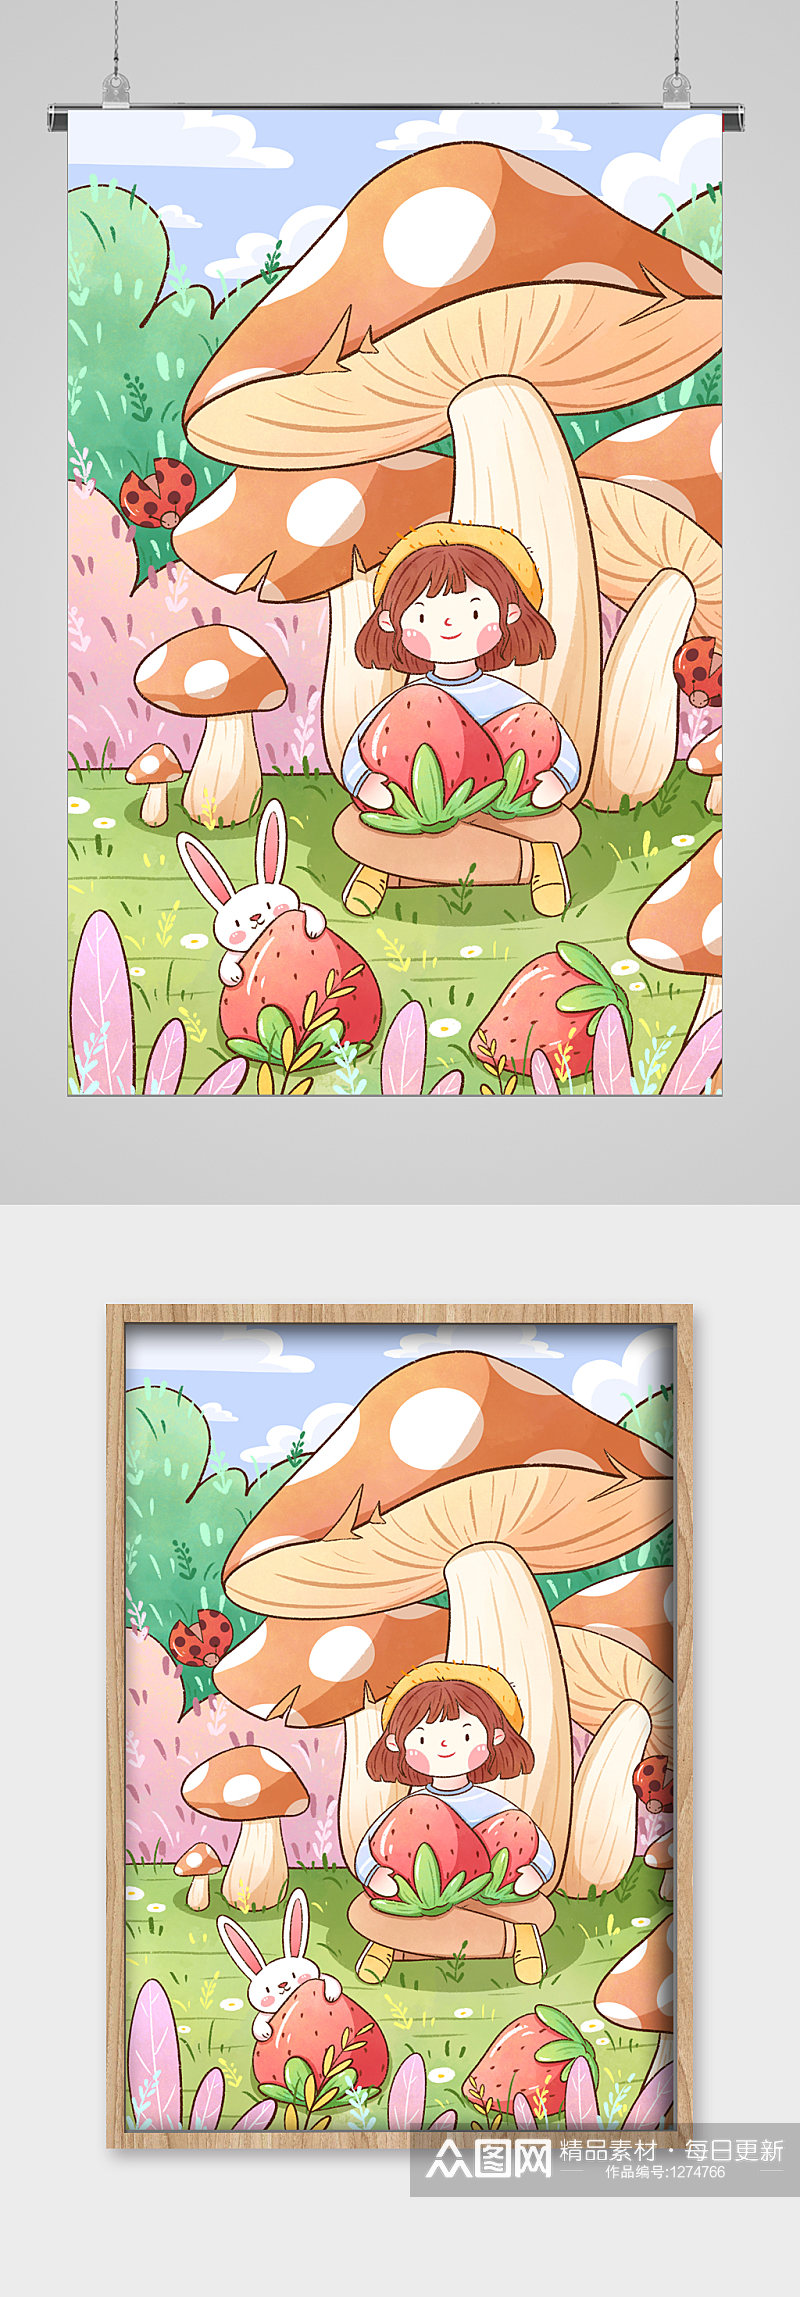 蘑菇下的草莓女孩宣传插画素材